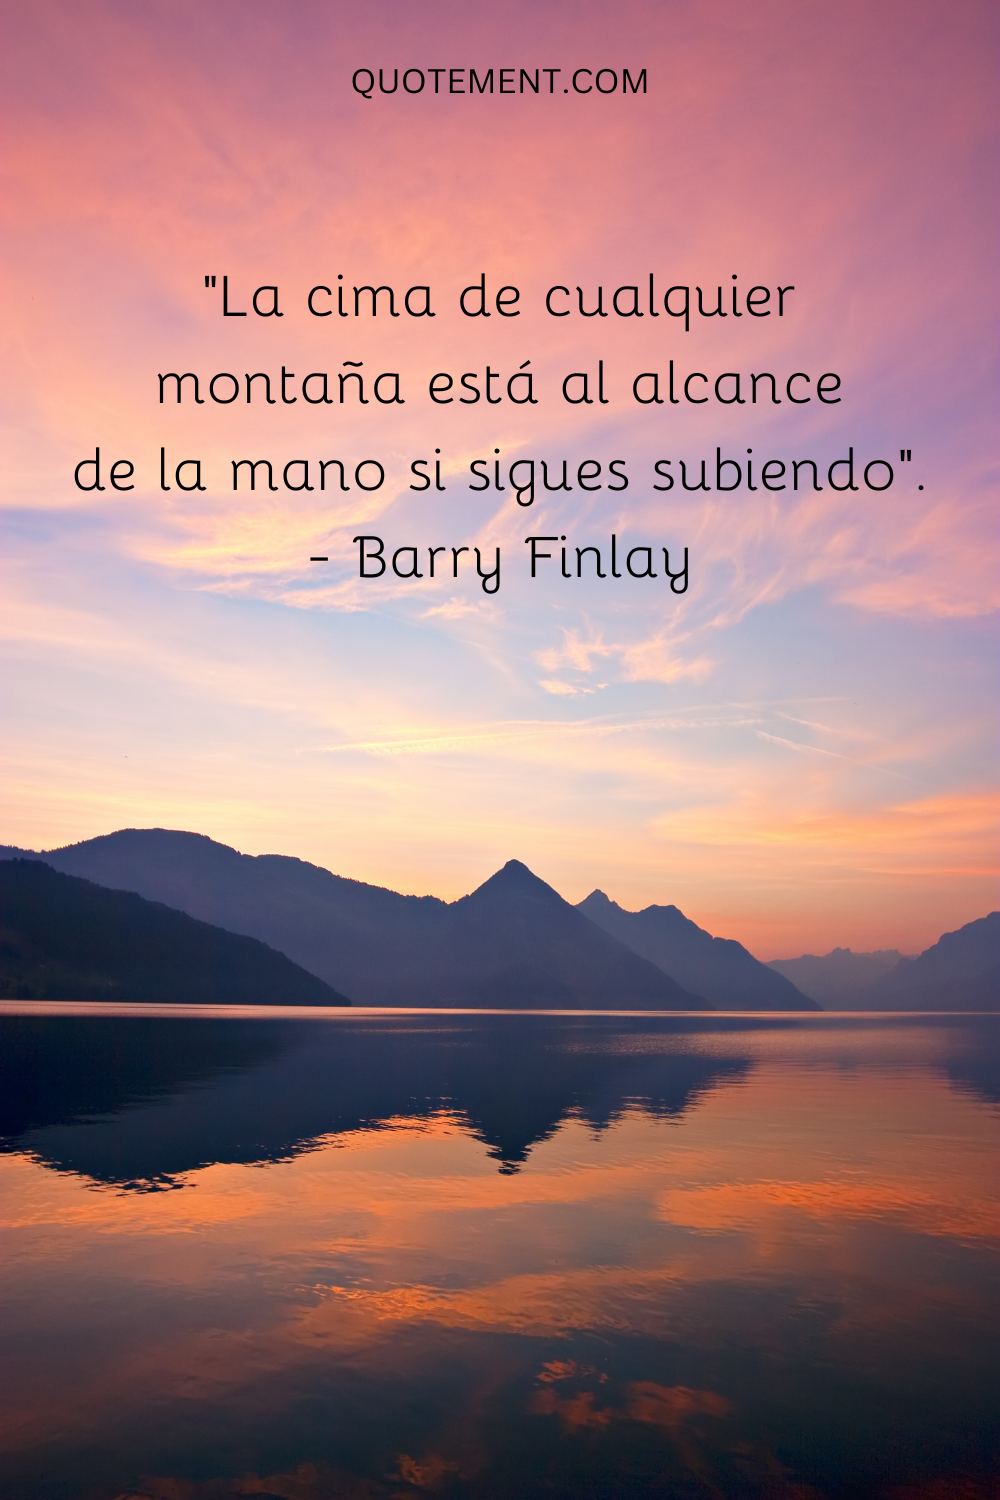 "La cima de cualquier montaña está al alcance de la mano si sigues subiendo". - Barry Finlay